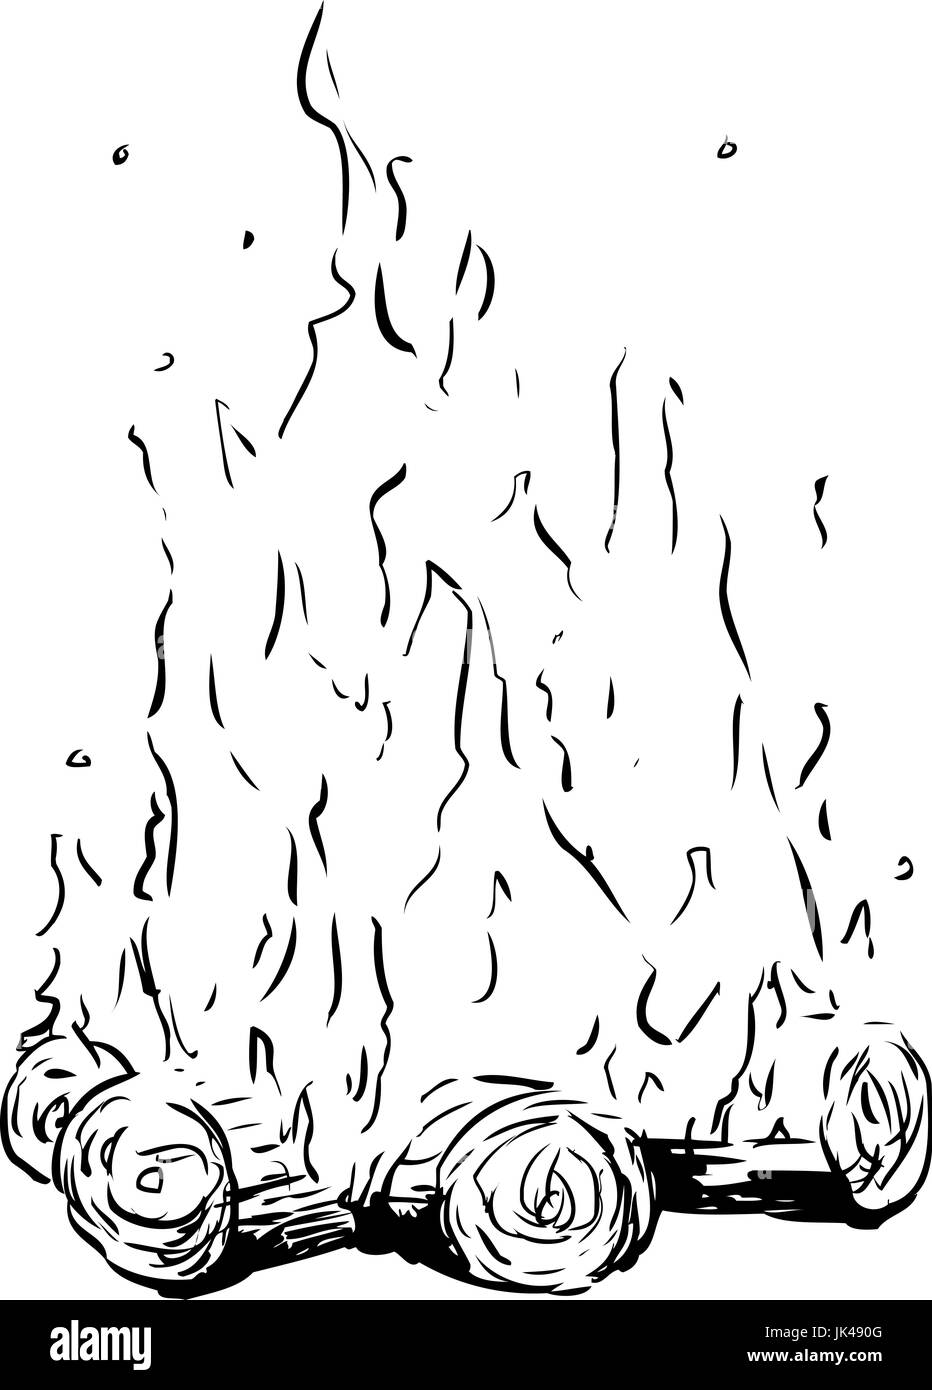 Croquis de contour de hauteur des flammes sur feu de bois ou de camp sur fond blanc Banque D'Images